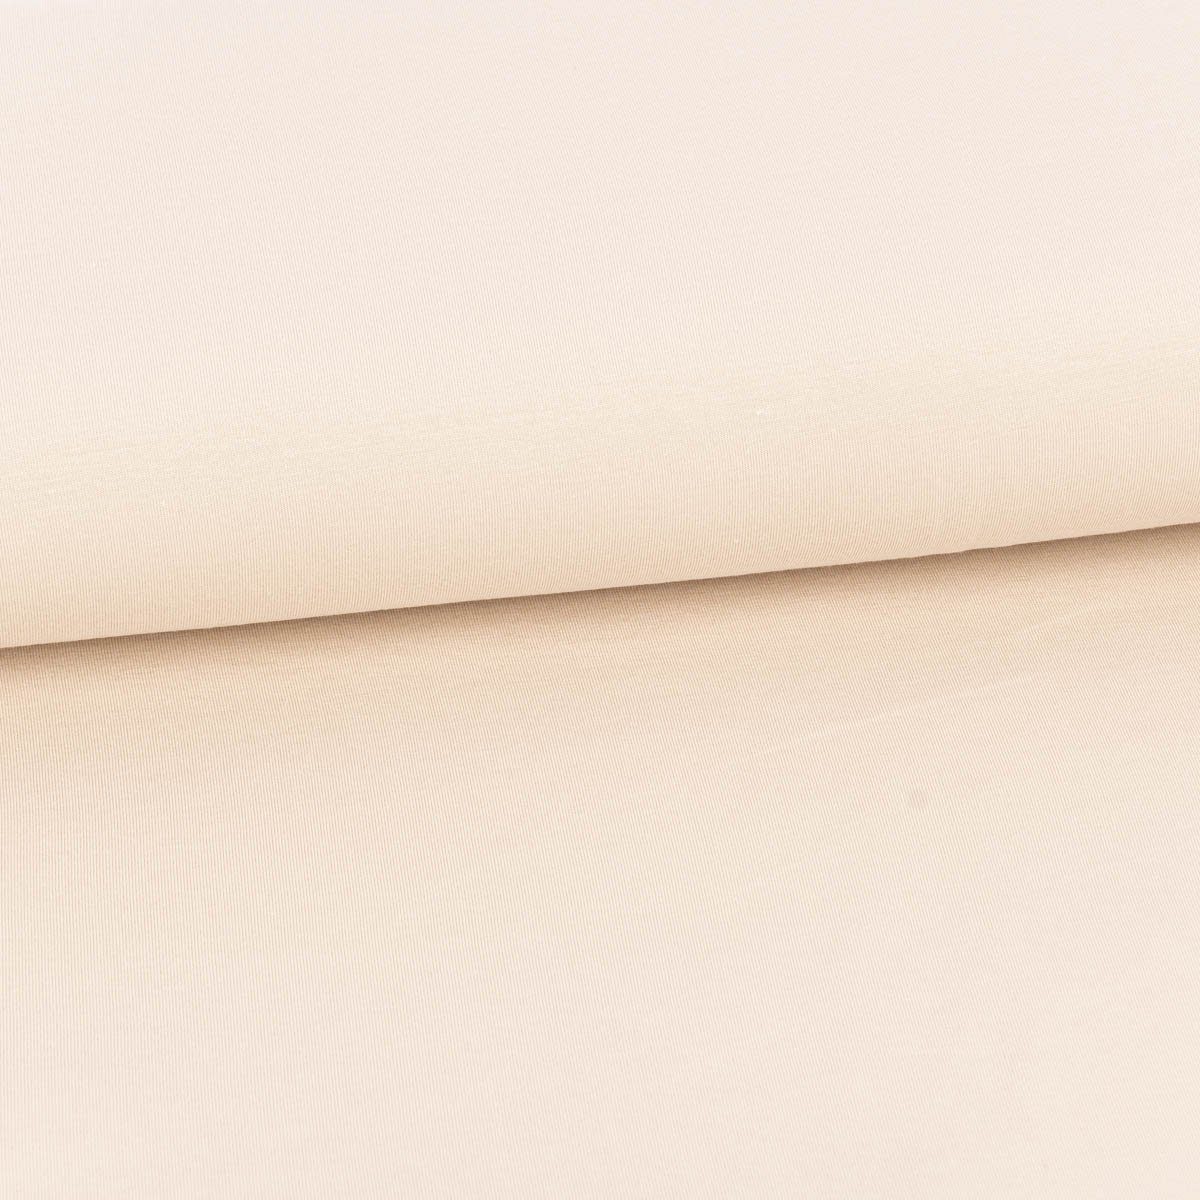 SCHÖNER LEBEN. Stoff Jersey Tencel Modal für Bekleidung einfarbig beige 1,45m Breite, allergikergeeignet